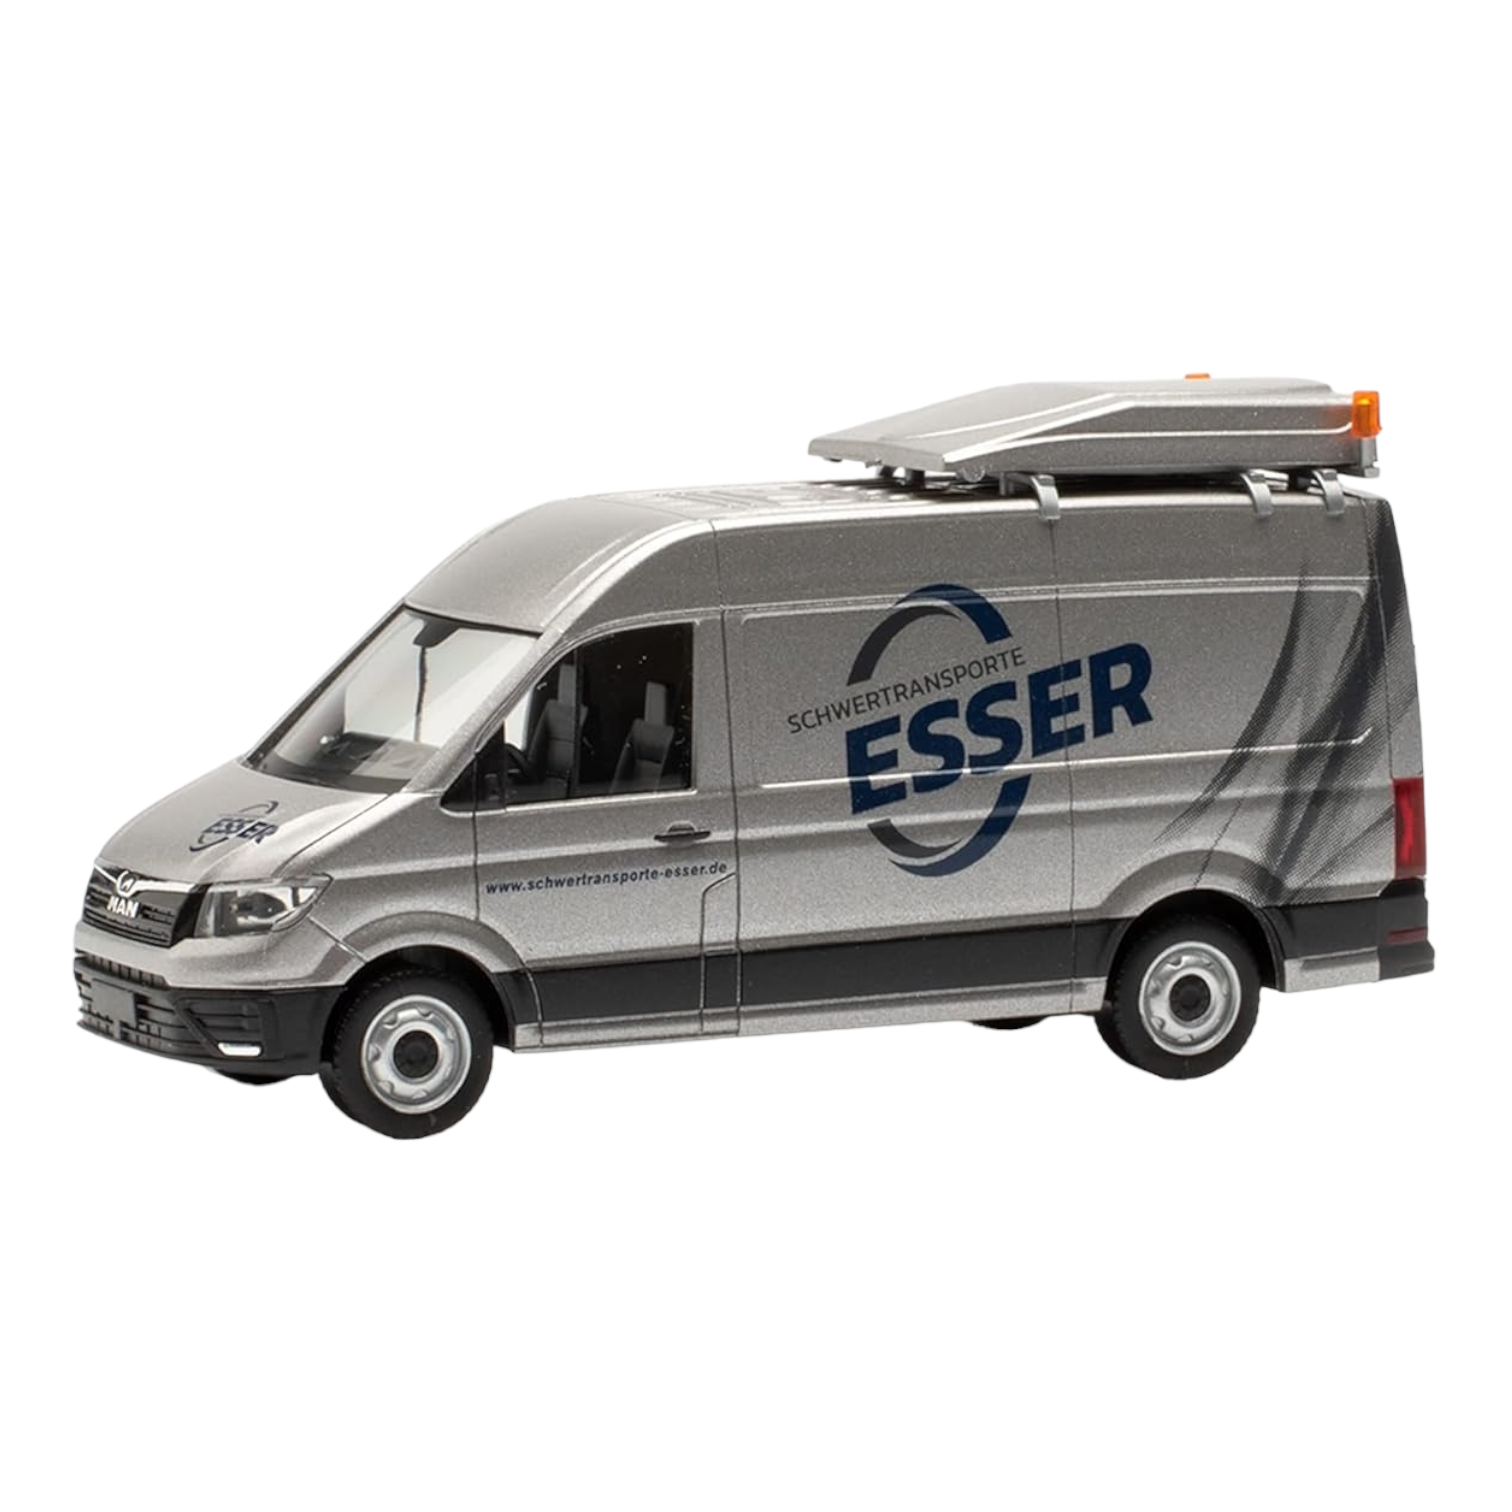 Herpa 096843 MAN TGE Kasten Schwertransporte "ESSER" Modellfahrzeug H0 1:87